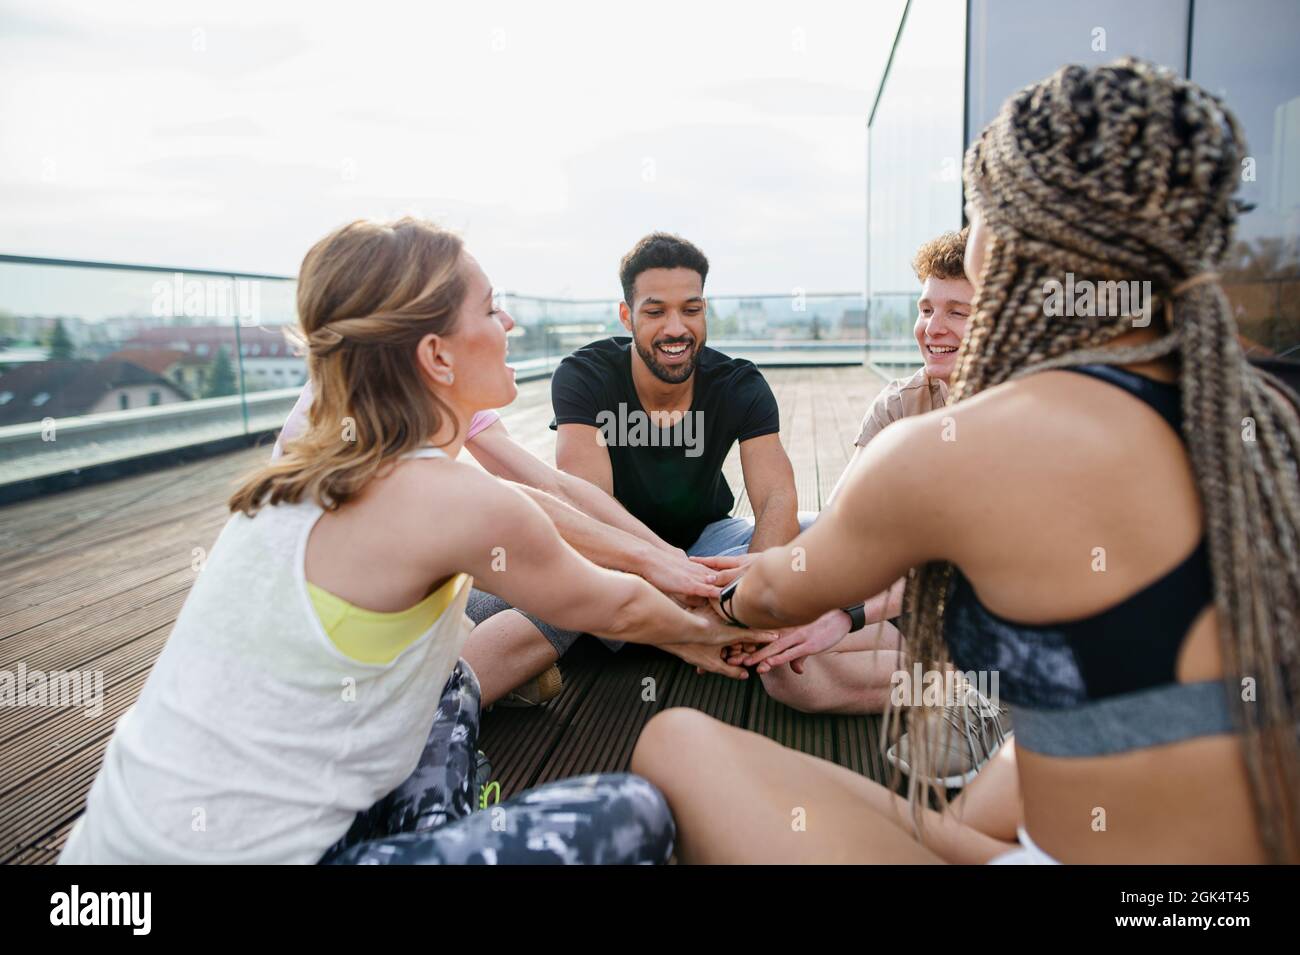 Gruppe von jungen Menschen tun Übung Stapeln Hände im Freien auf der Terrasse, Sport und gesunde Lebensweise Konzept. Stockfoto